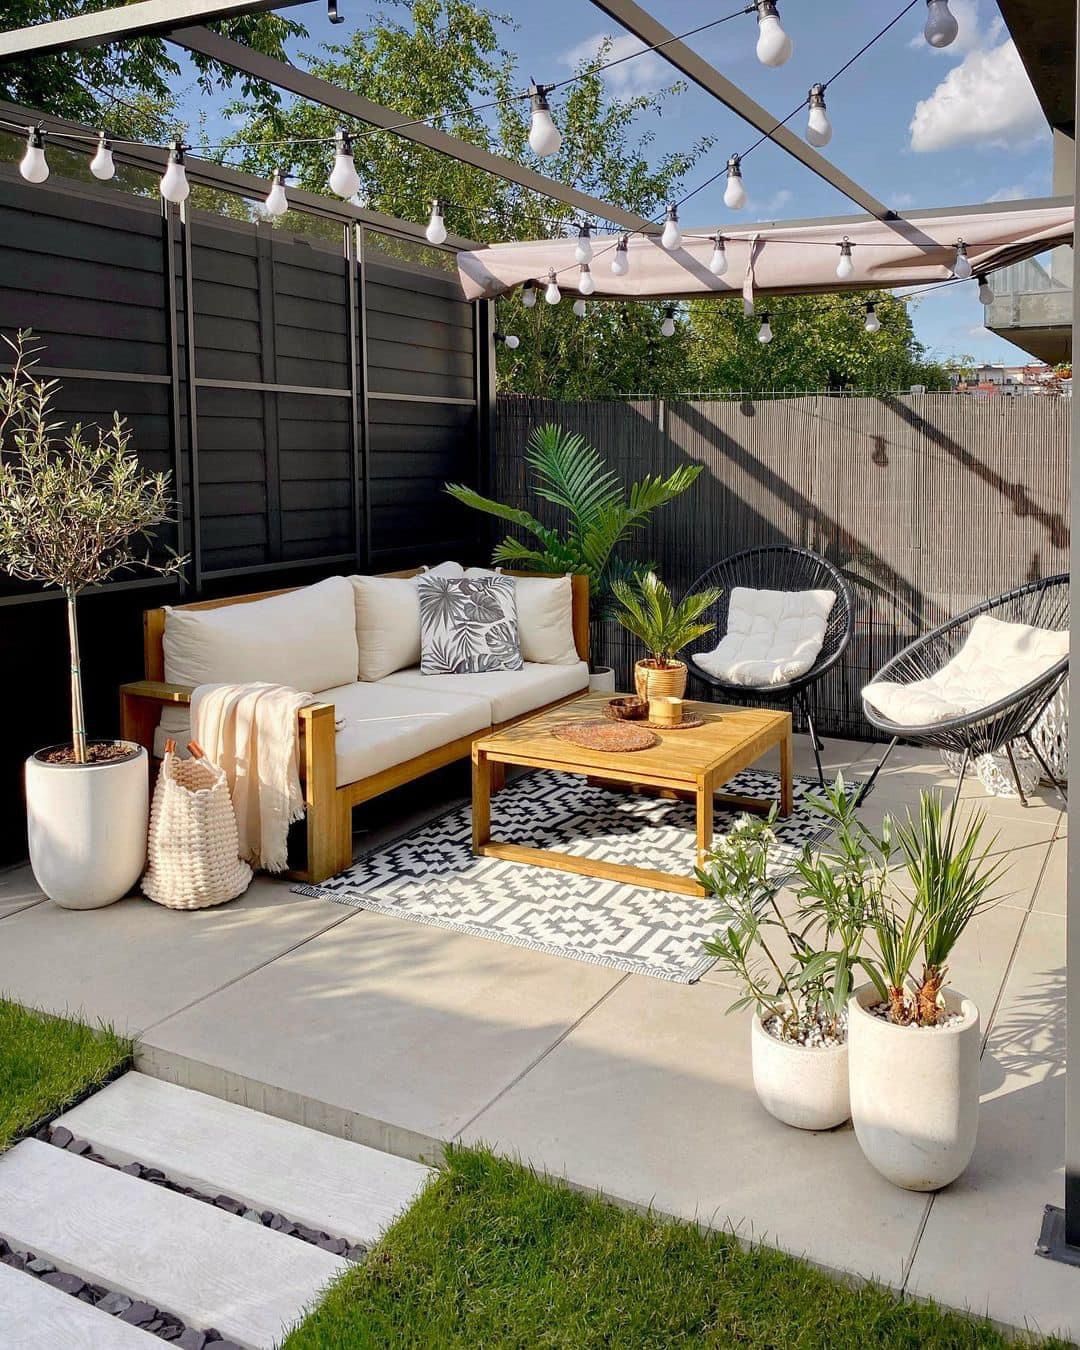 Ideas for Creating a Cozy Garden Patio